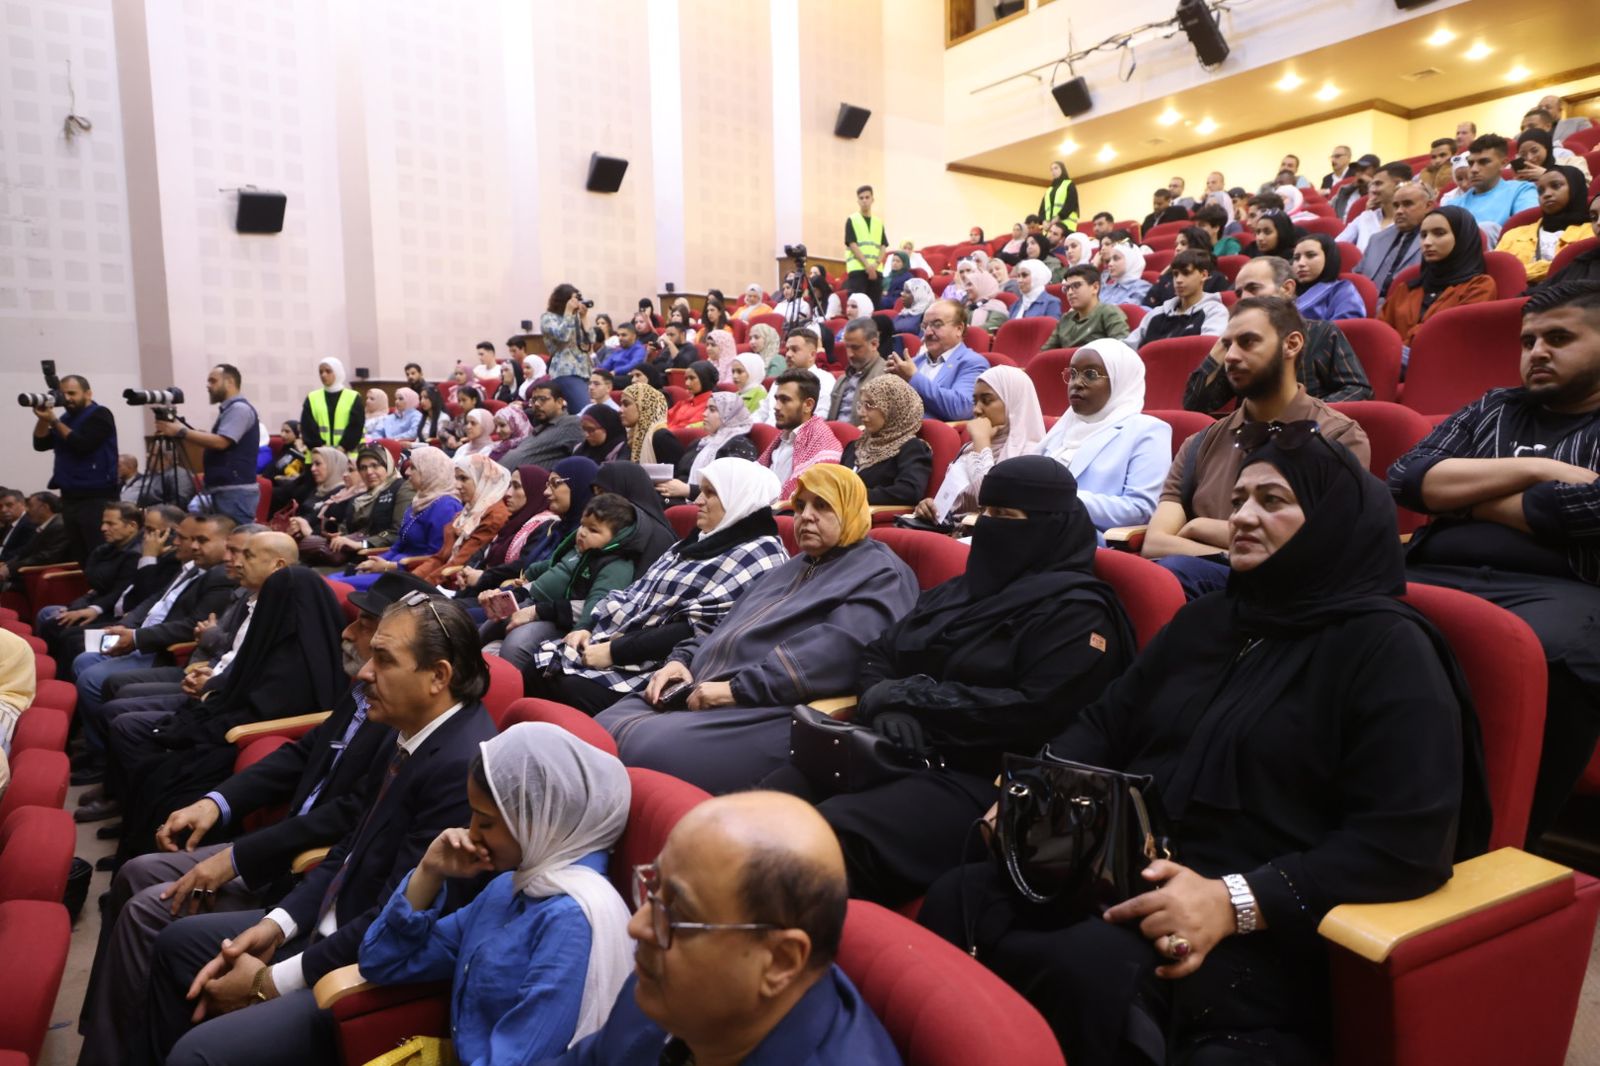 وزير الشباب يطلق اللقاءات التعريفية بجائزة الحسين بن عبدالله الثاني للعمل التطوعي في دورتها الثانية.